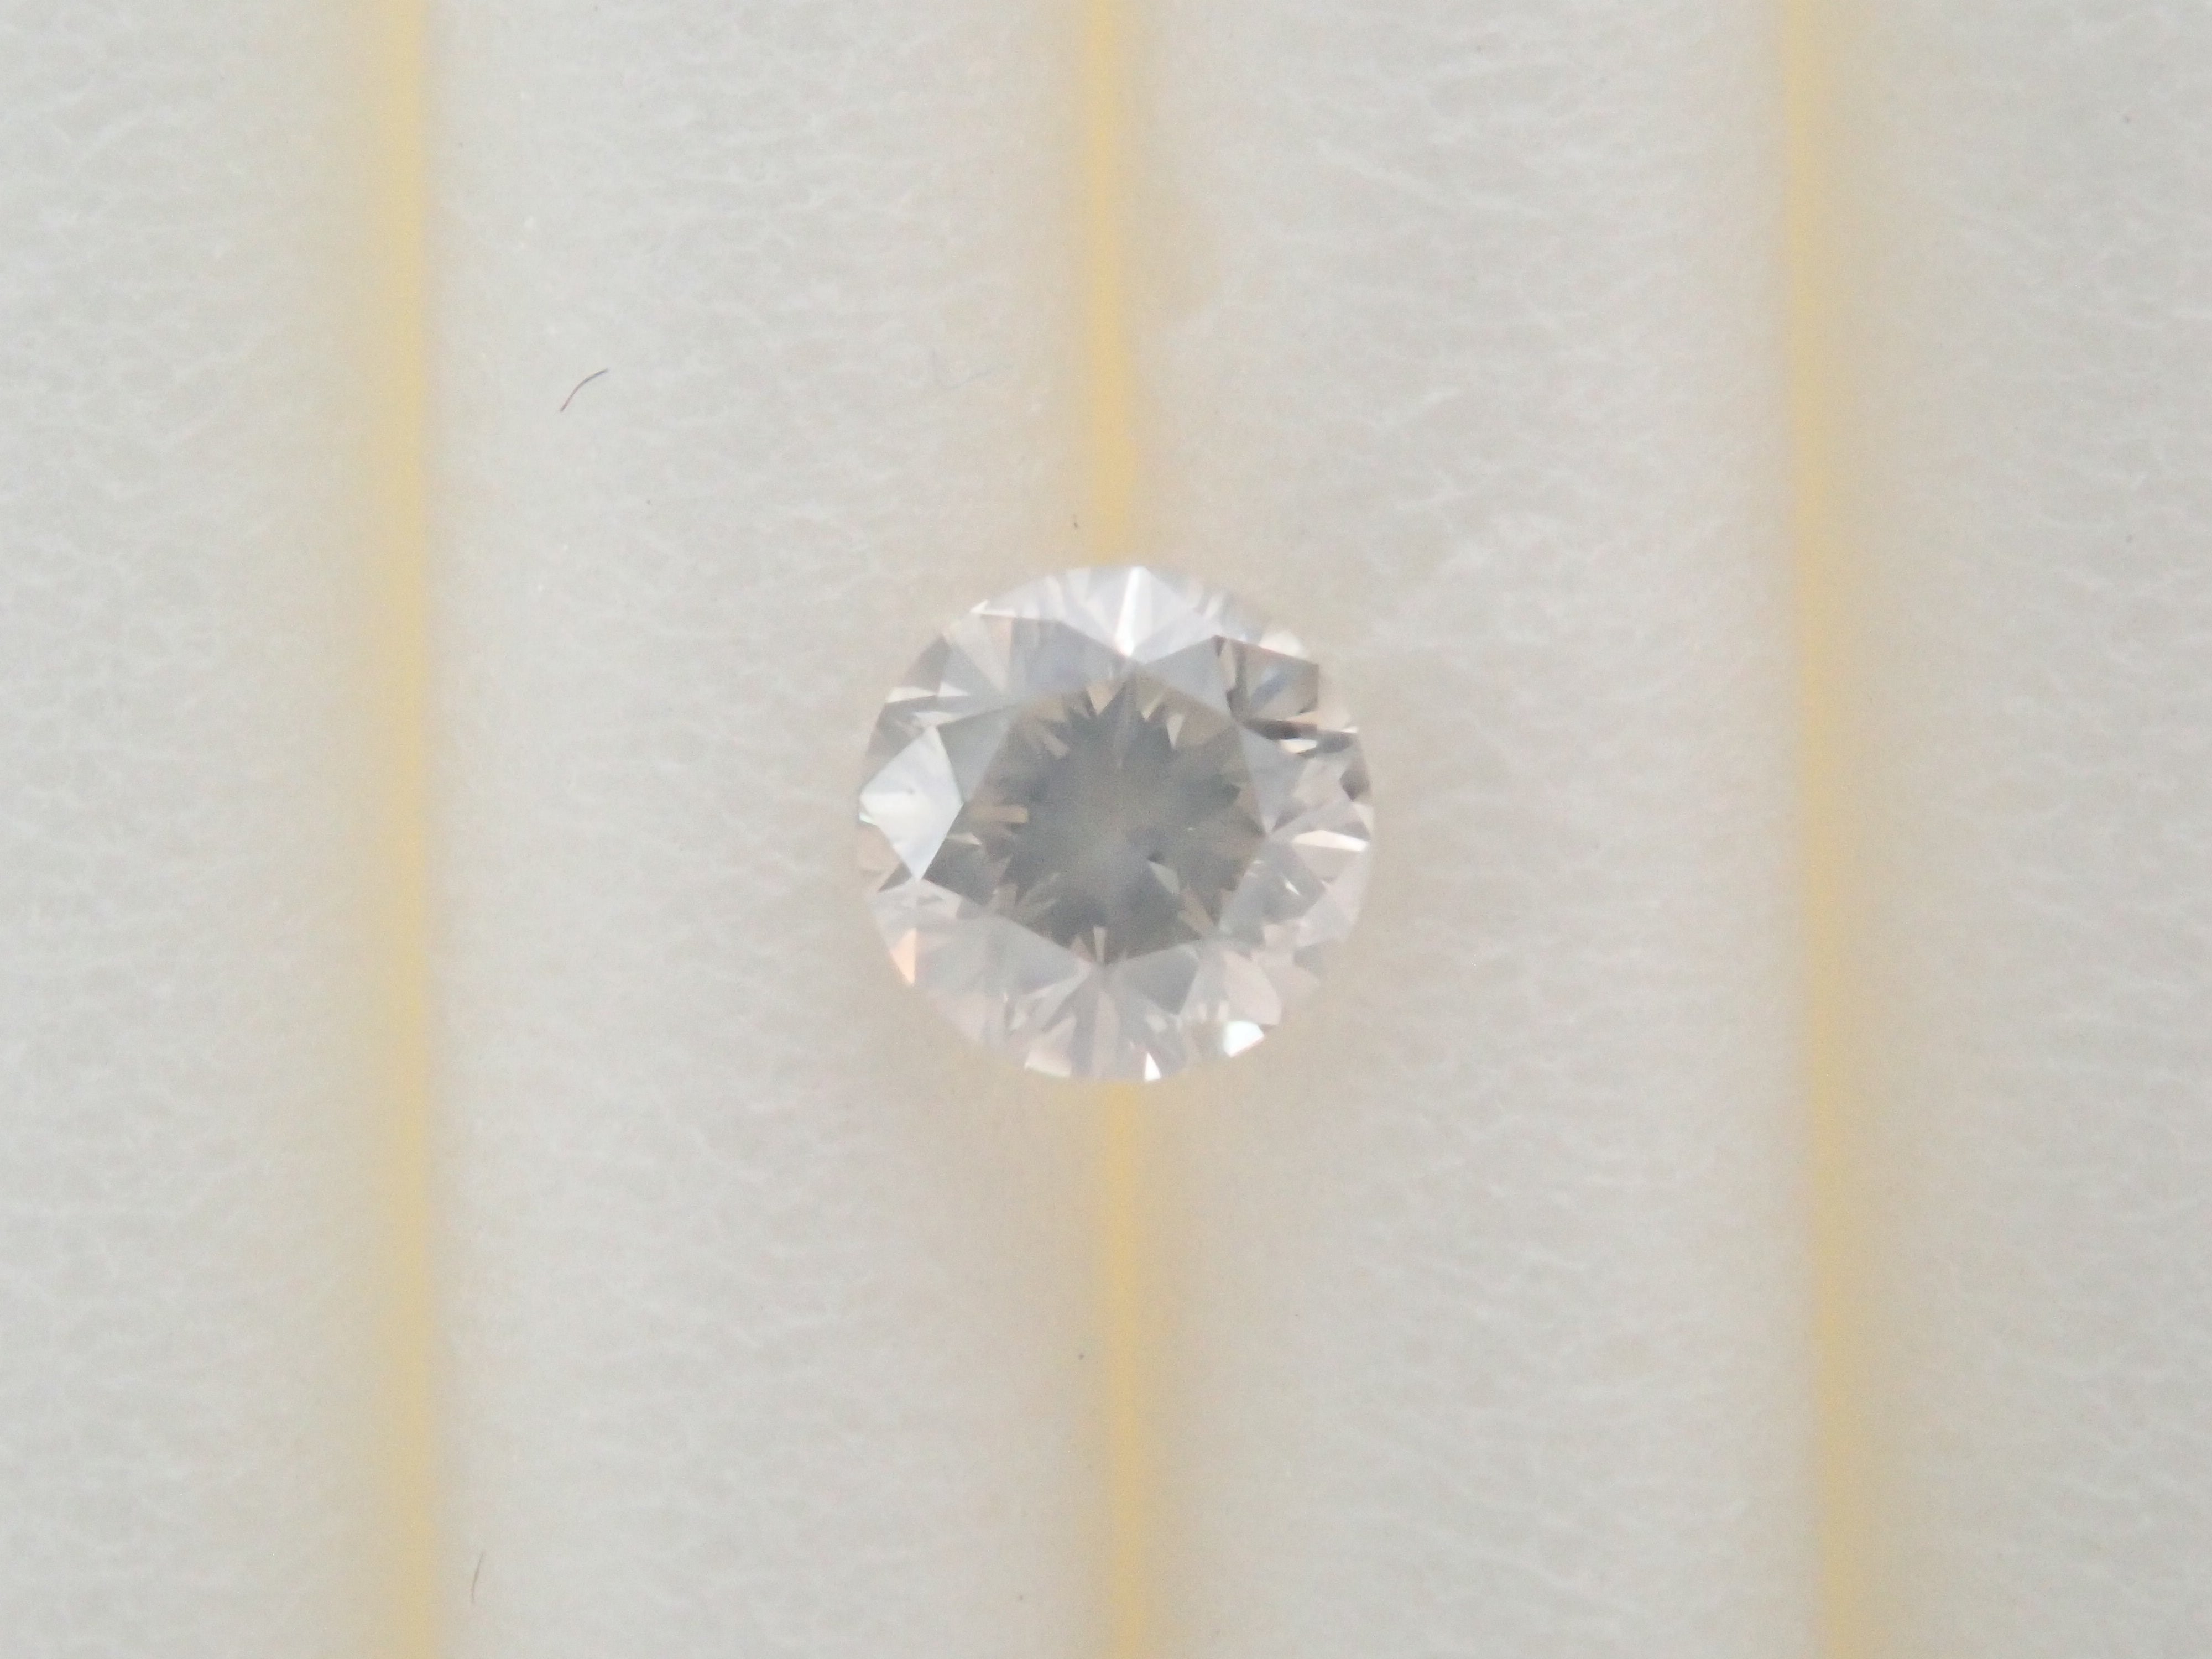 シルキーダイヤモンド 2.7mm/0.101ctルース